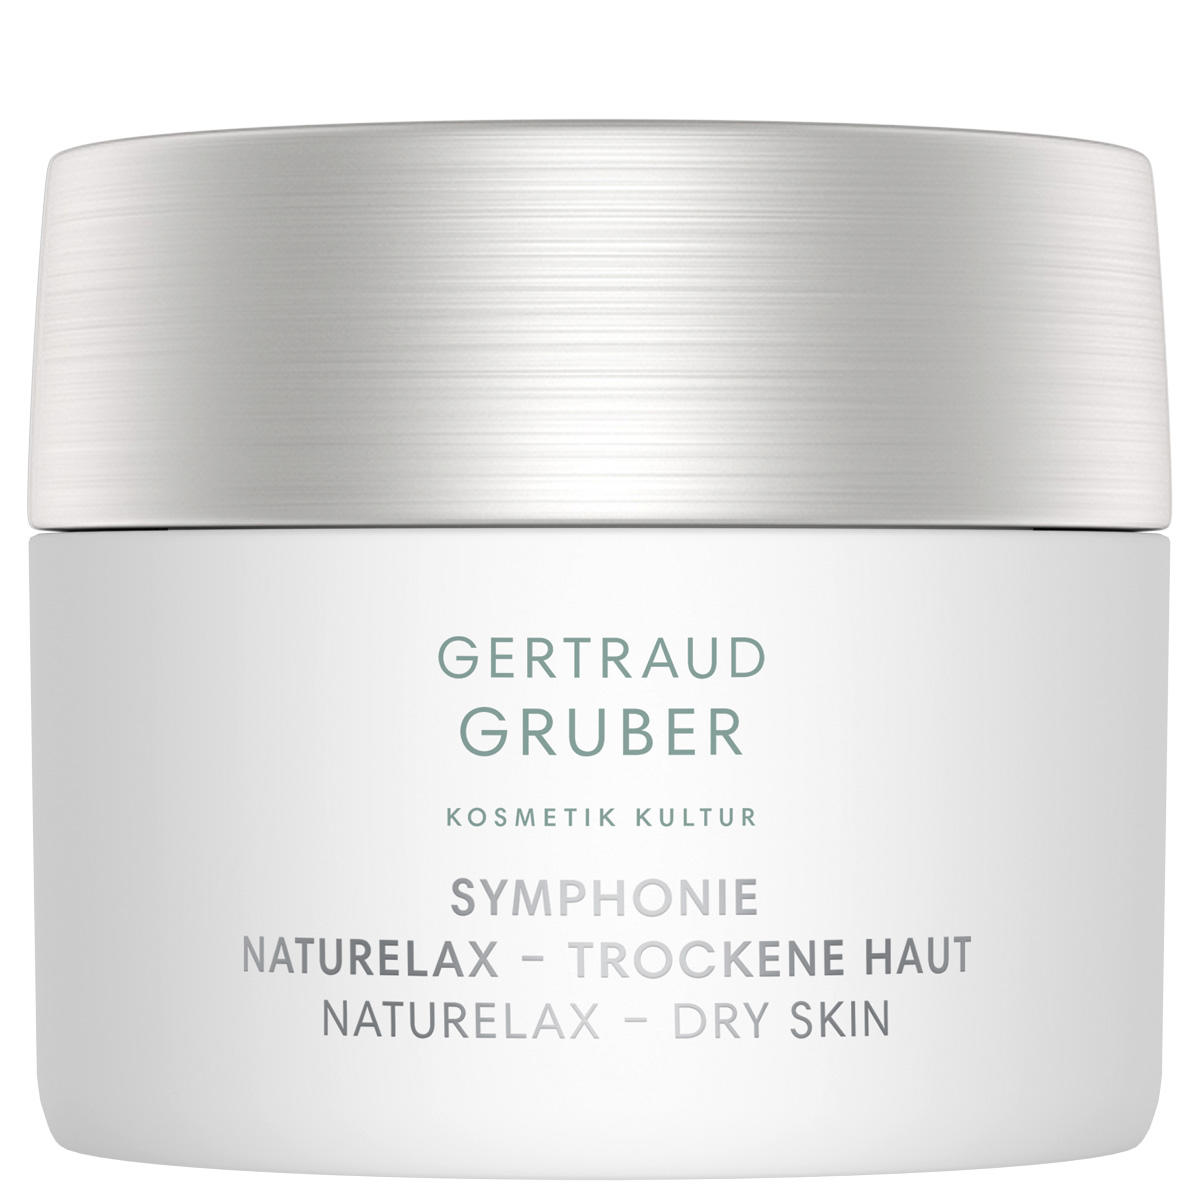 GERTRAUD GRUBER NatuRelax - Dry skin 50 ml - 1